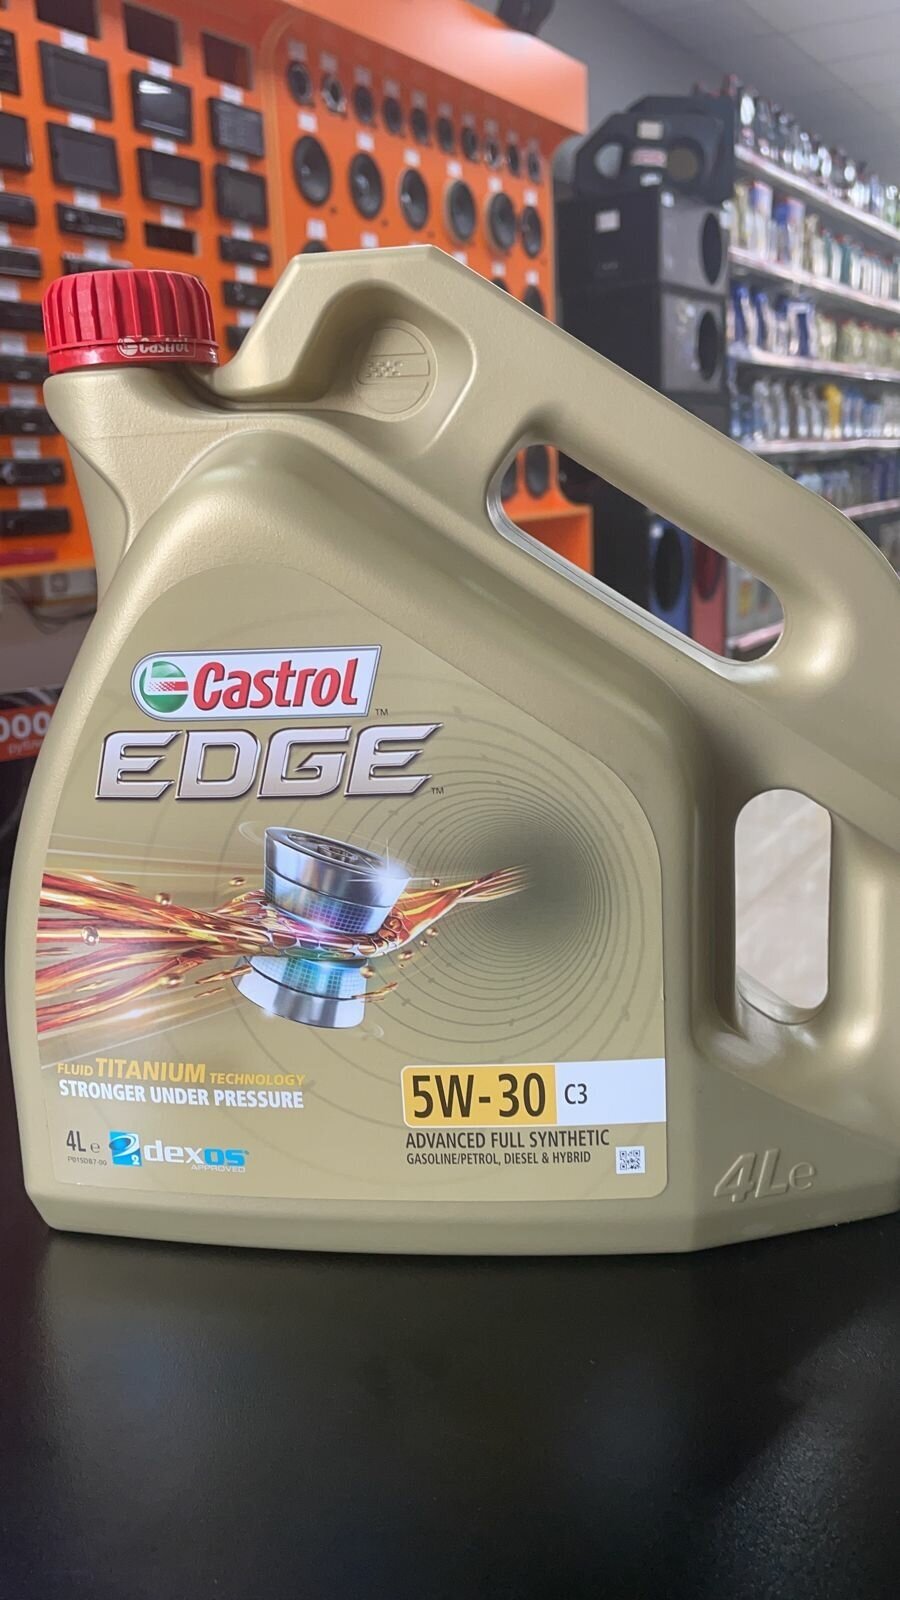 Синтетическое моторное масло Castrol Edge 5W-30 C3, 4 л, 1 шт.